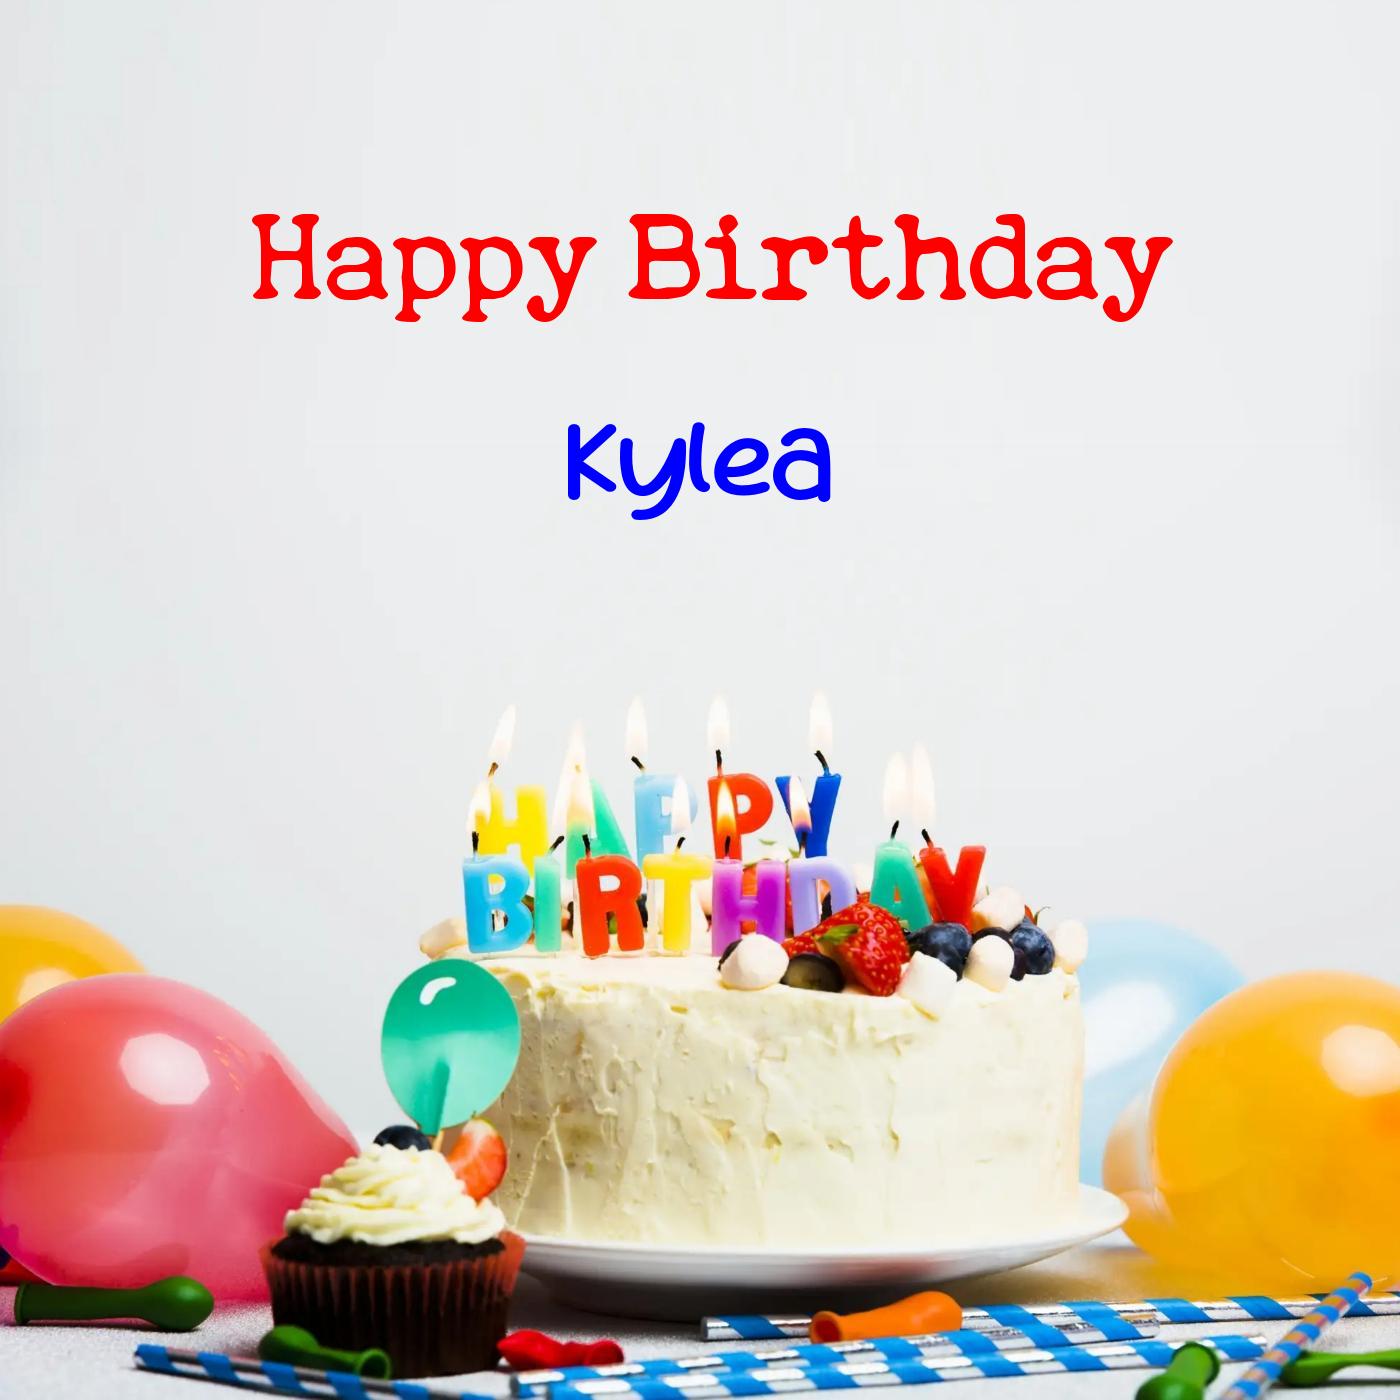 Happy Birthday Kylea Cake Balloons Card